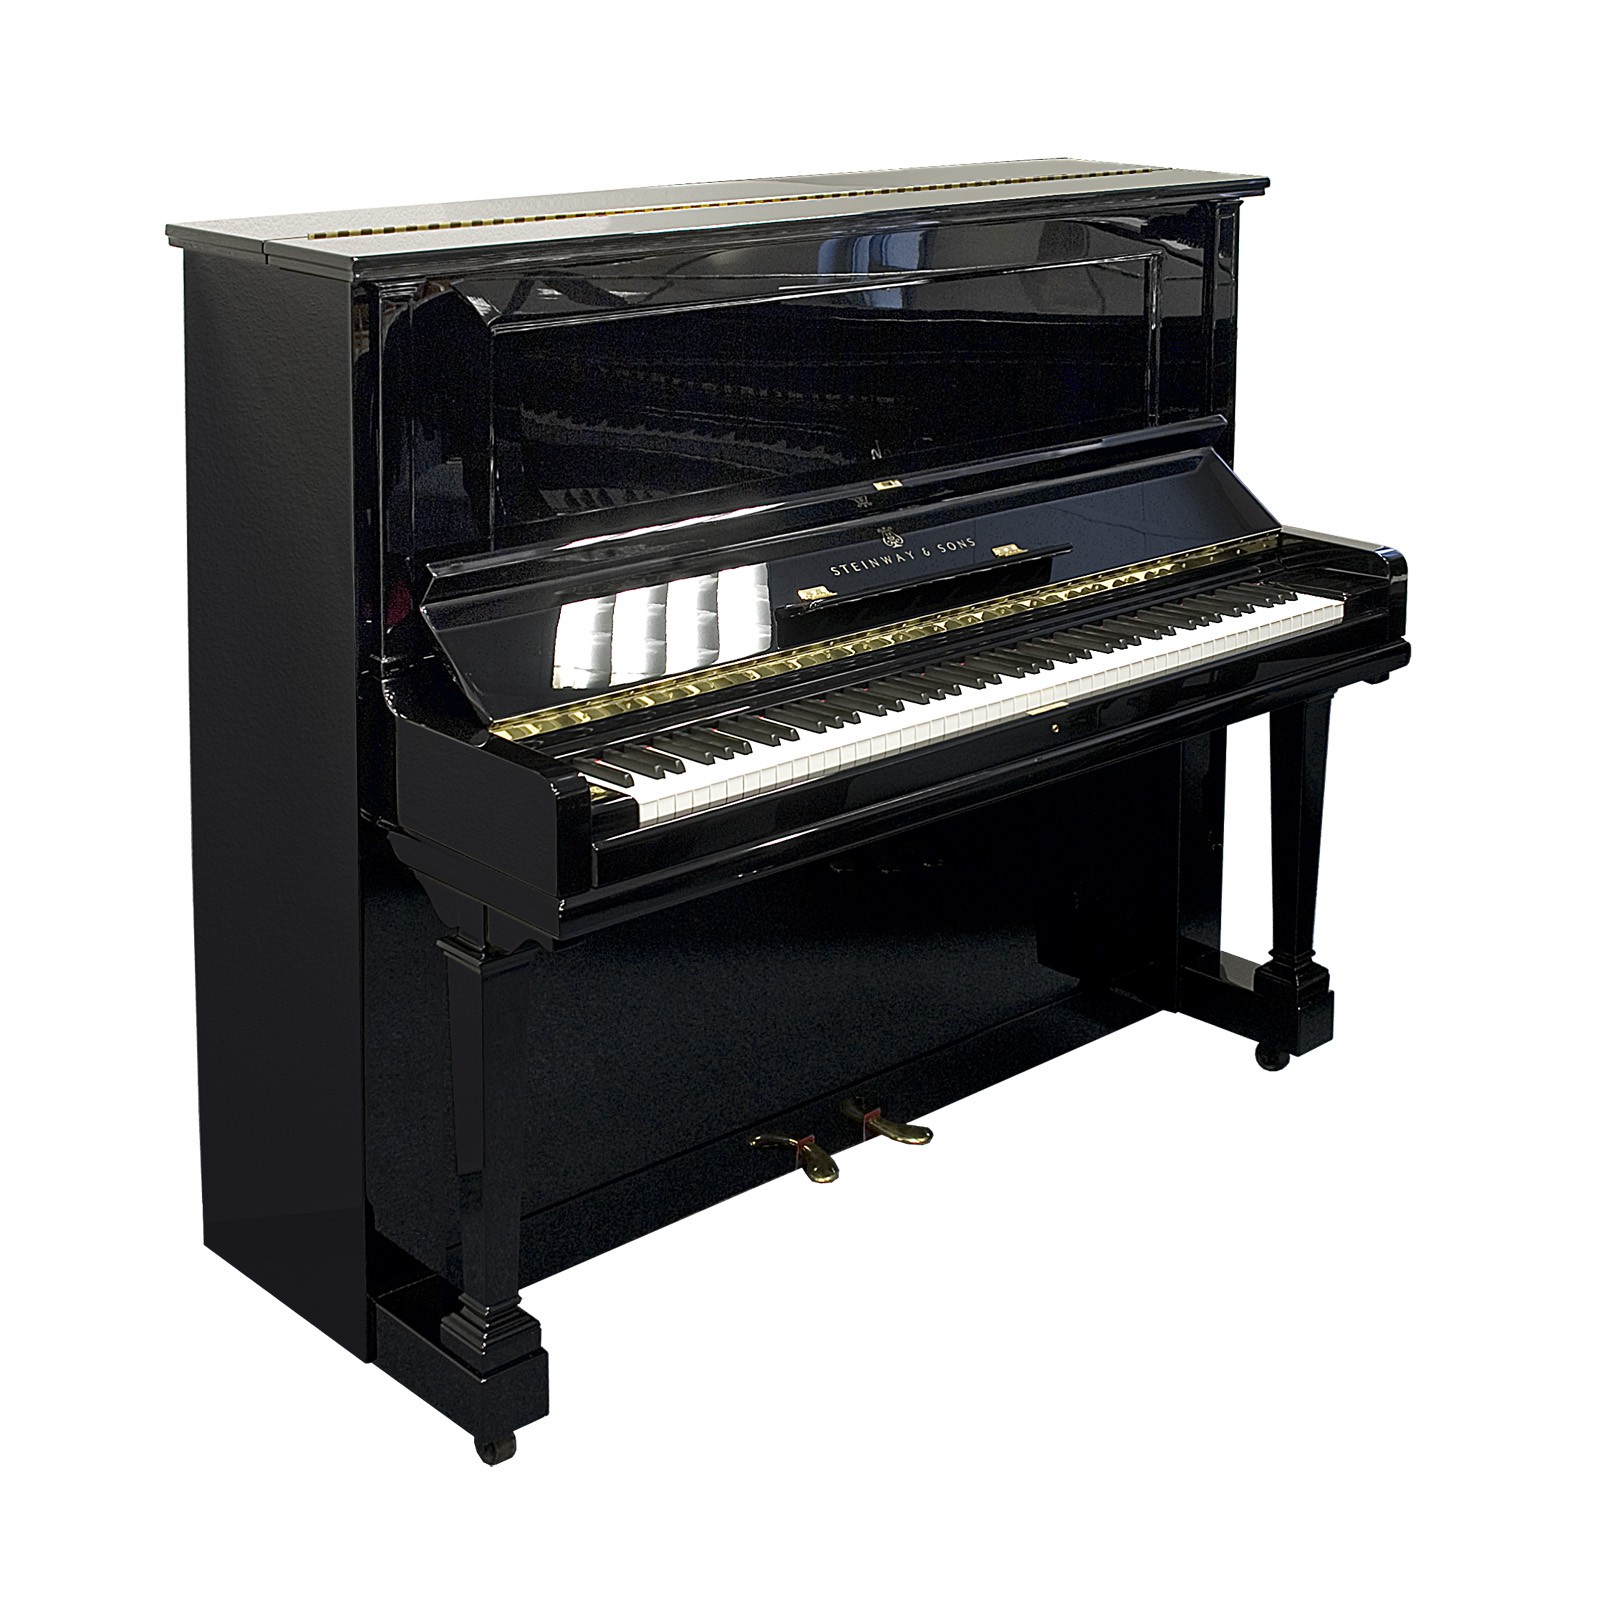 Steinway &amp; Sons Klavier, Modell K, 132 cm, gebraucht - Musikinstrumente ...